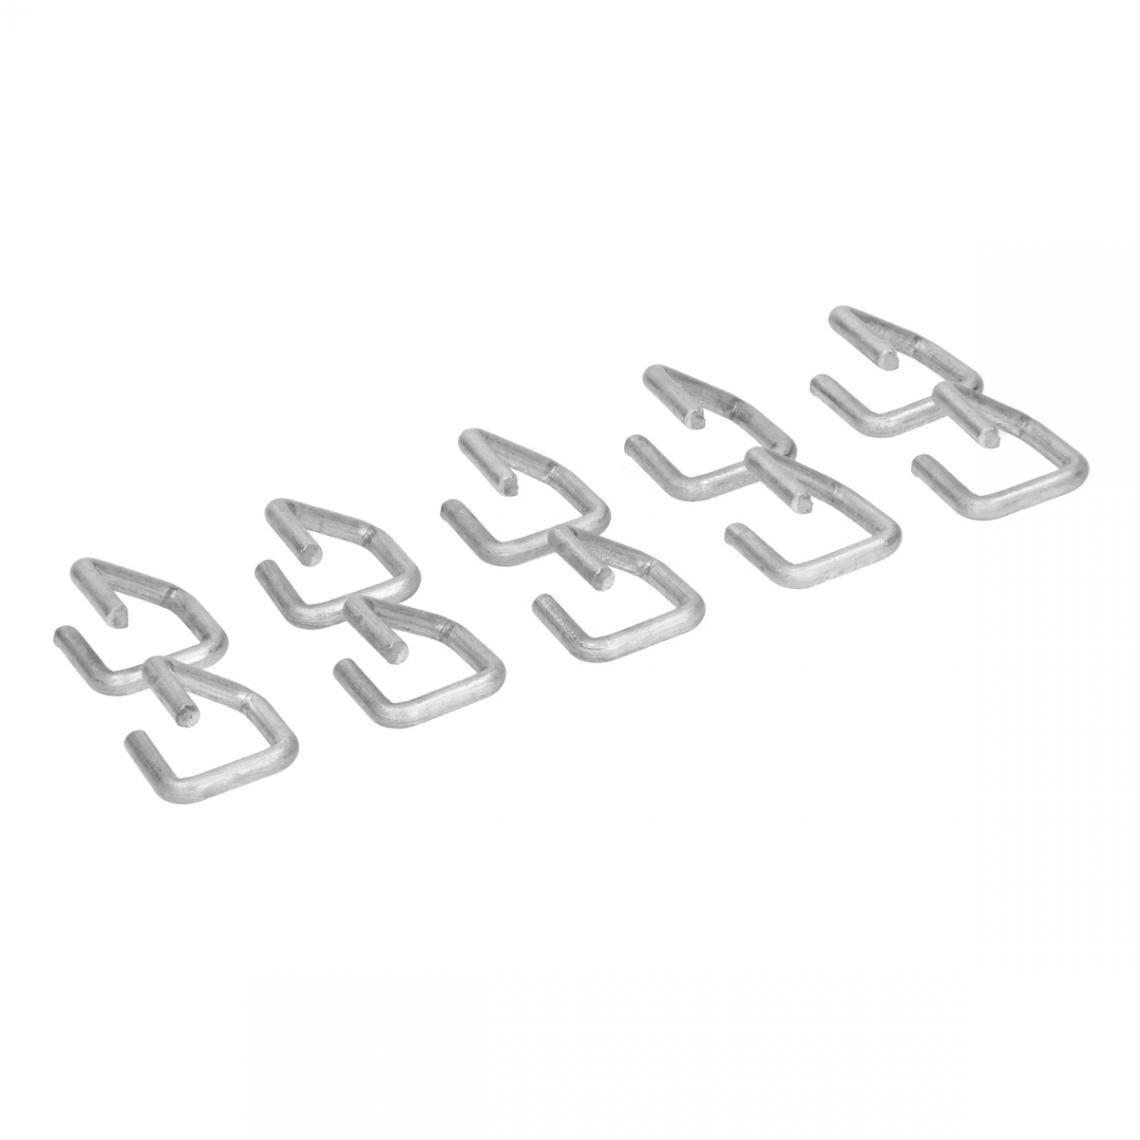 Ecd Germany - Agrafes pour gabion anneaux de fil fixation filets zinc-aluminium 2x2 cm 10 pcs - Clôture grillagée